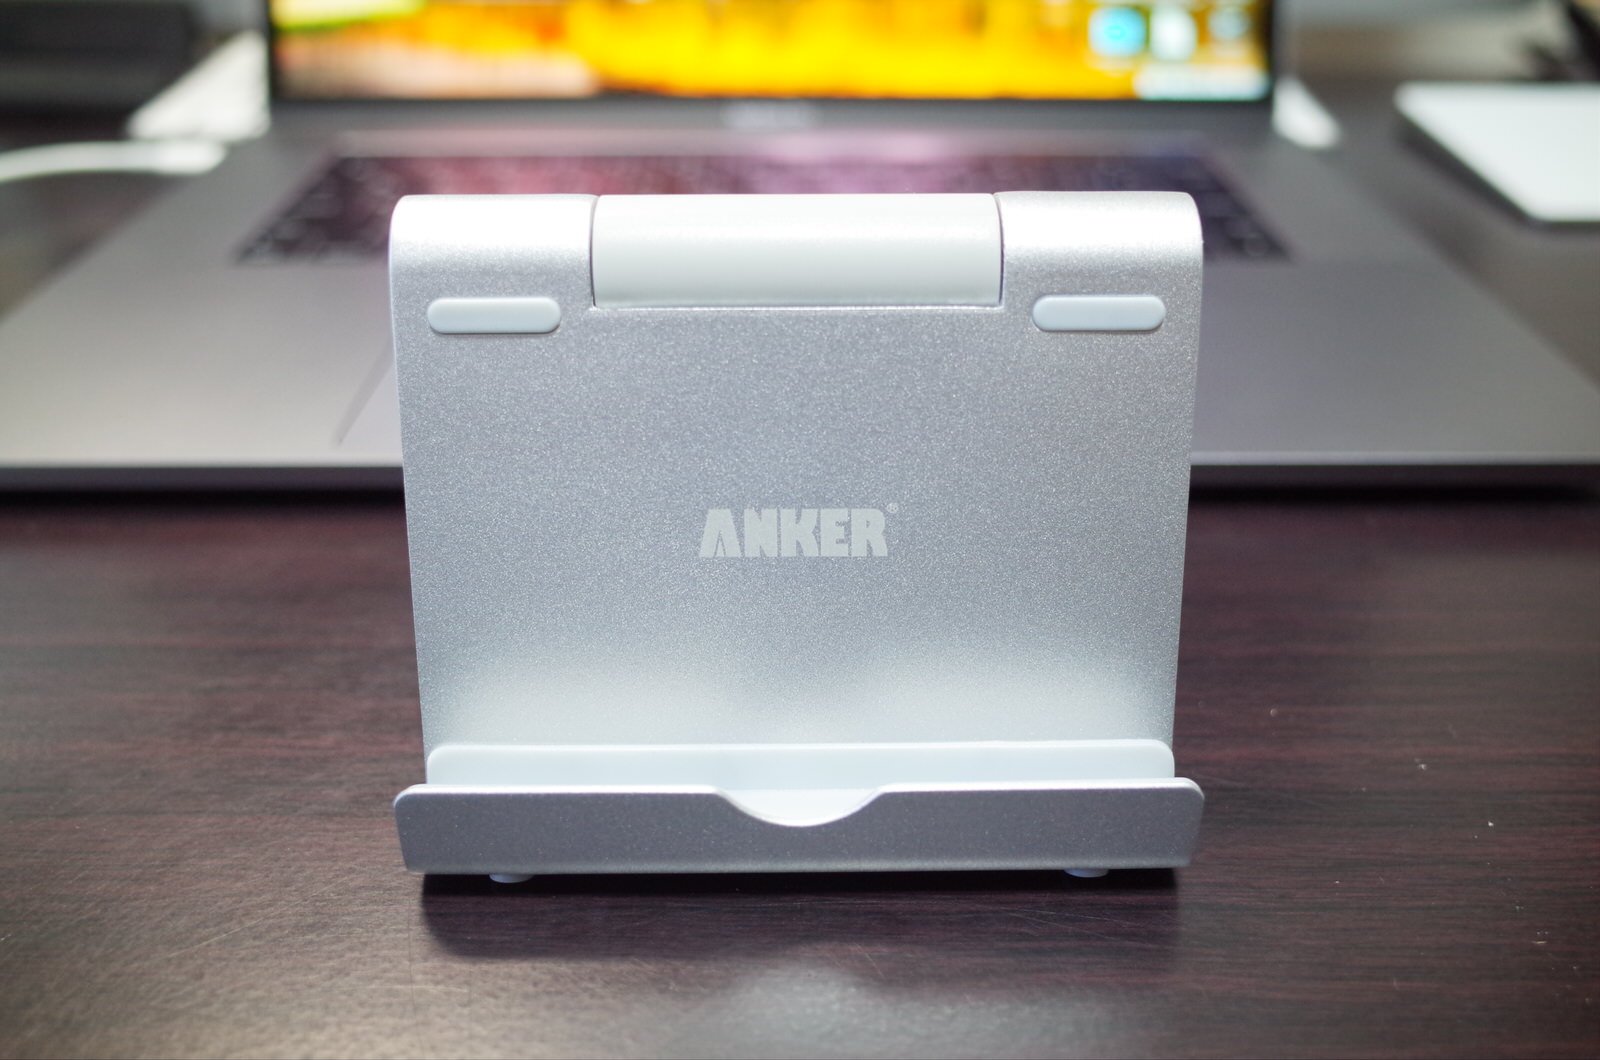 [Amazon]iPad ProやiPhone Xを立てかけるスタンド「Anker タブレット用スタンド」が届いたので紹介してみるよ